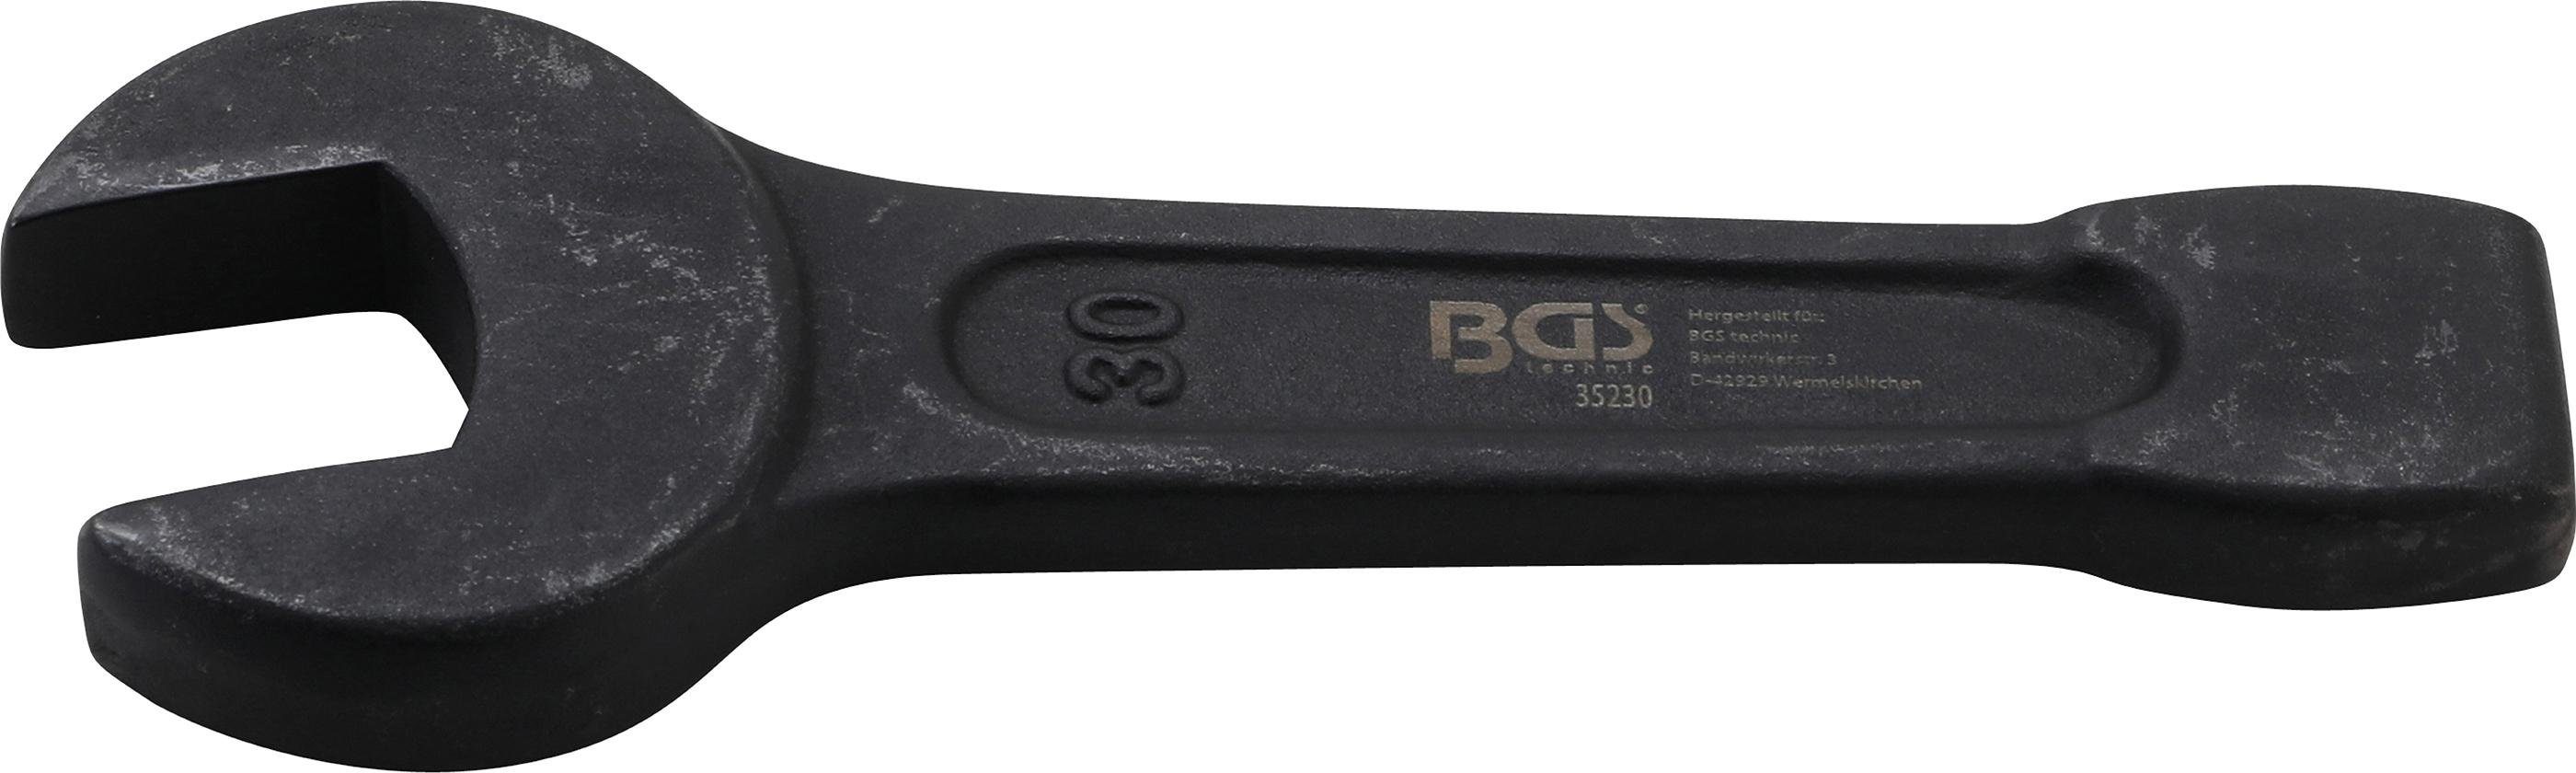 BGS technic Maulschlüssel Schlag-Maulschlüssel, SW 30 mm